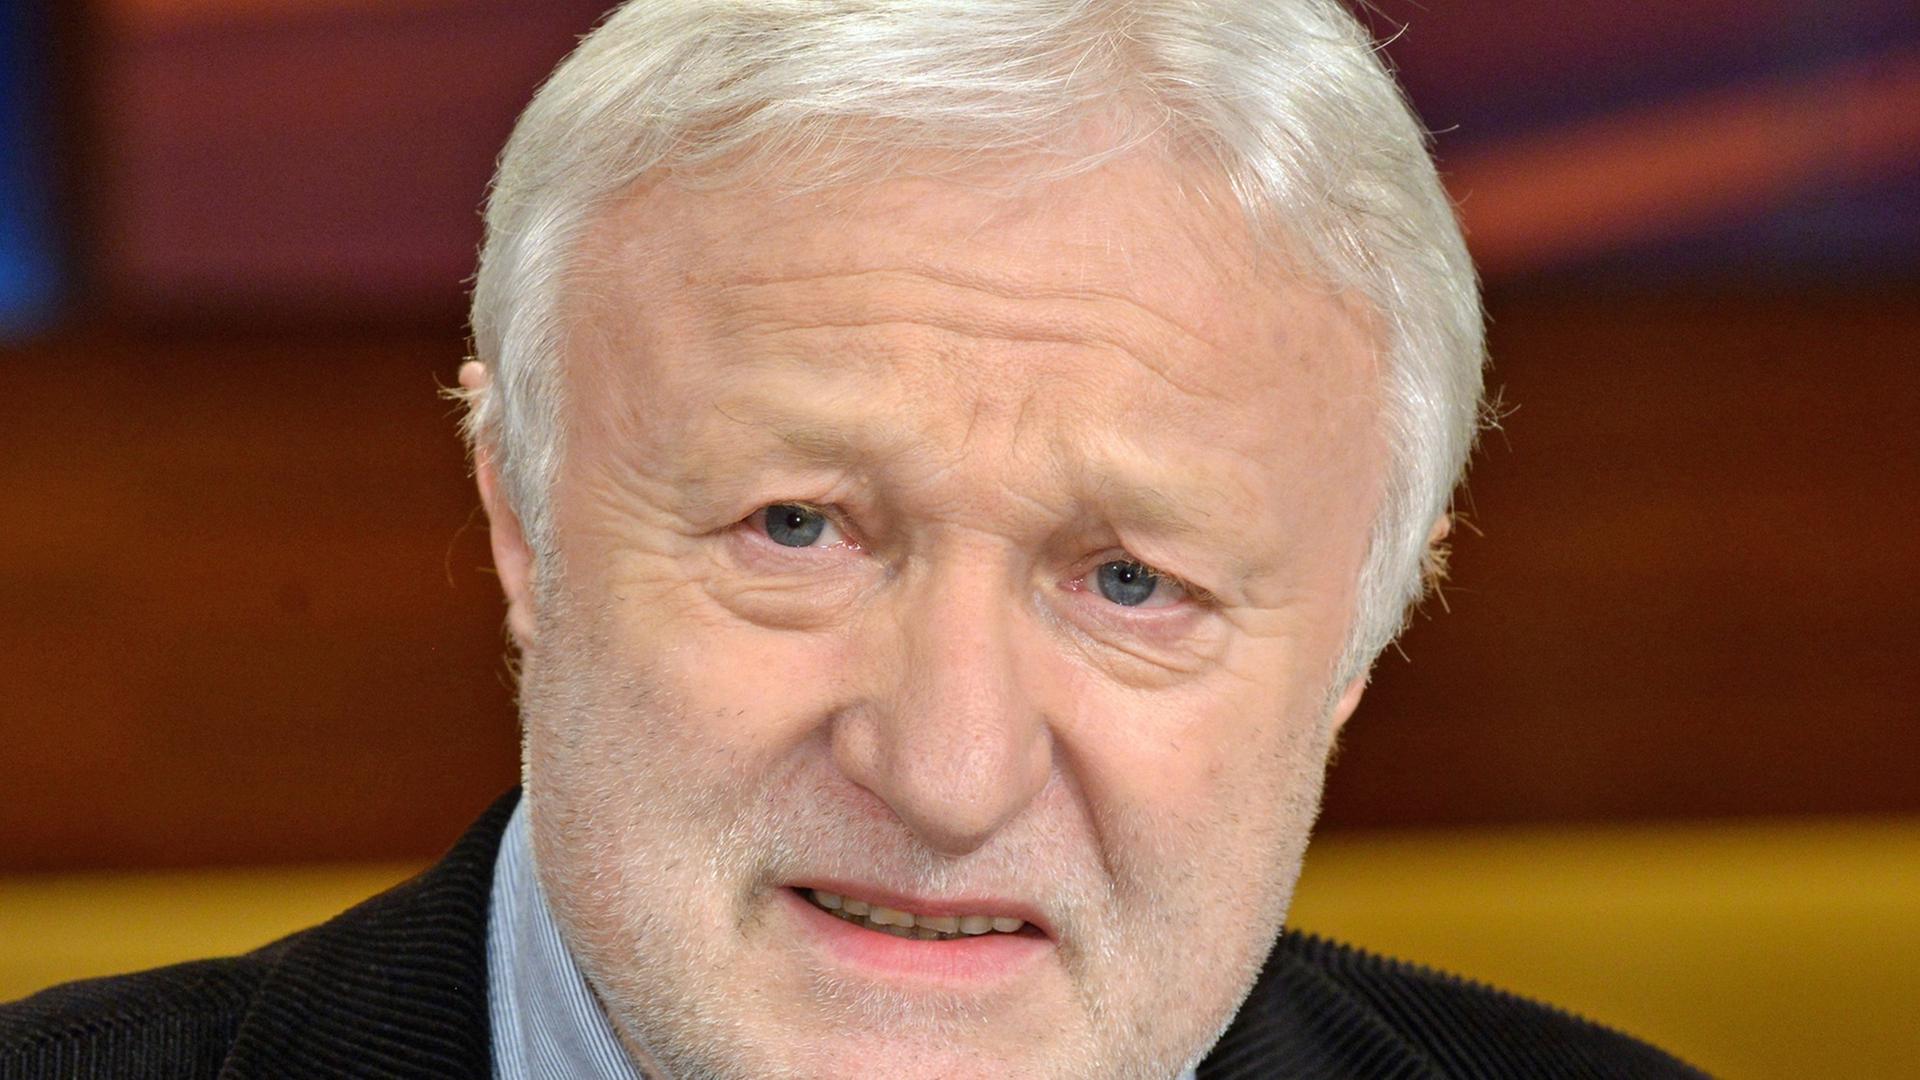 Werner Schulz von den Grünen, von 2009 bis 2014 Mitglied des Europäischen Parlaments